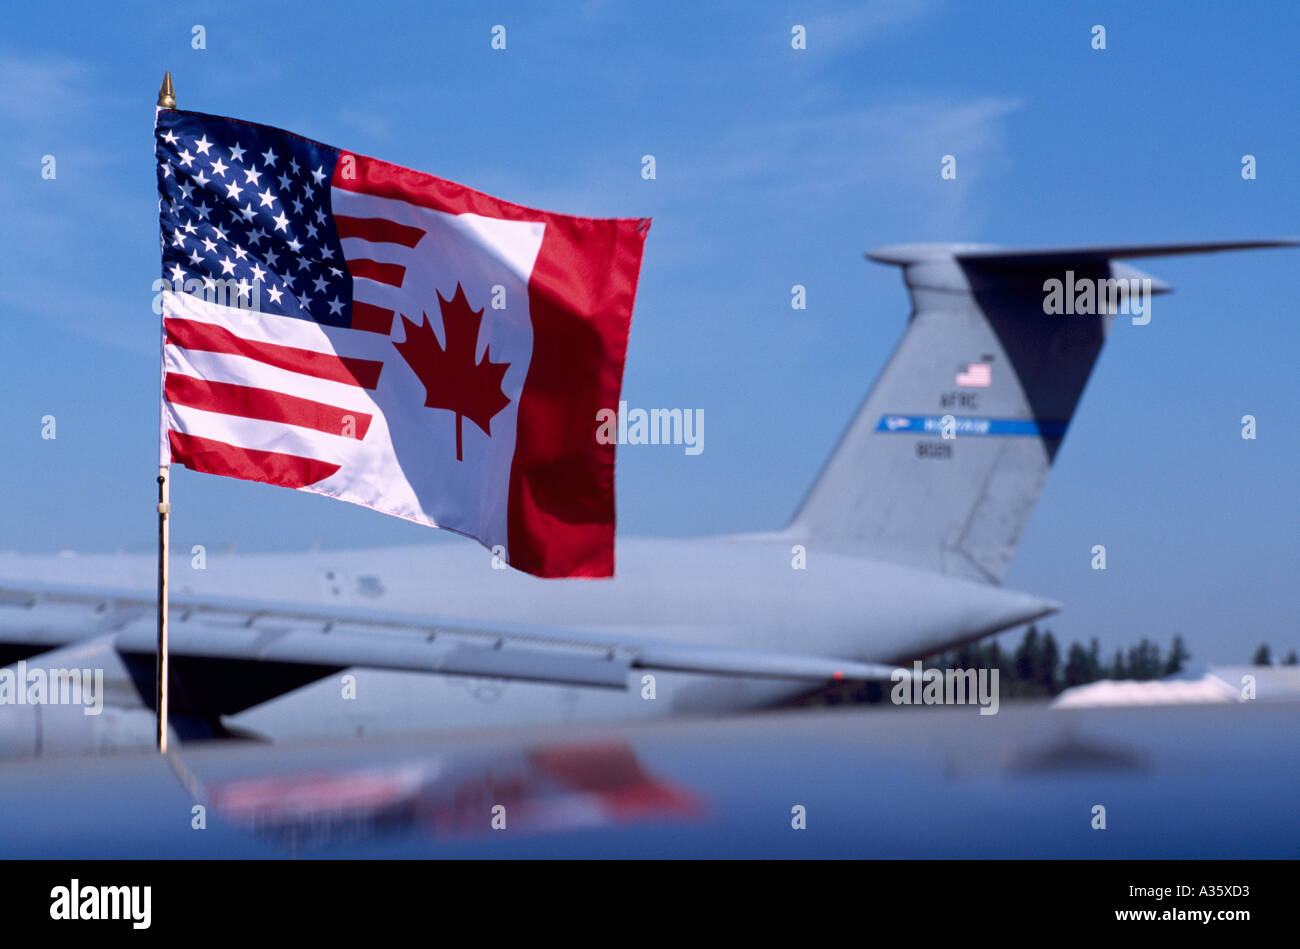 Freundschaft Flagge, inoffizielle Flagge, die Vereinigung der amerikanischen und kanadischen Nationalflaggen, Abbotsford Airshow, BC, Britisch-Kolumbien, Kanada Stockfoto